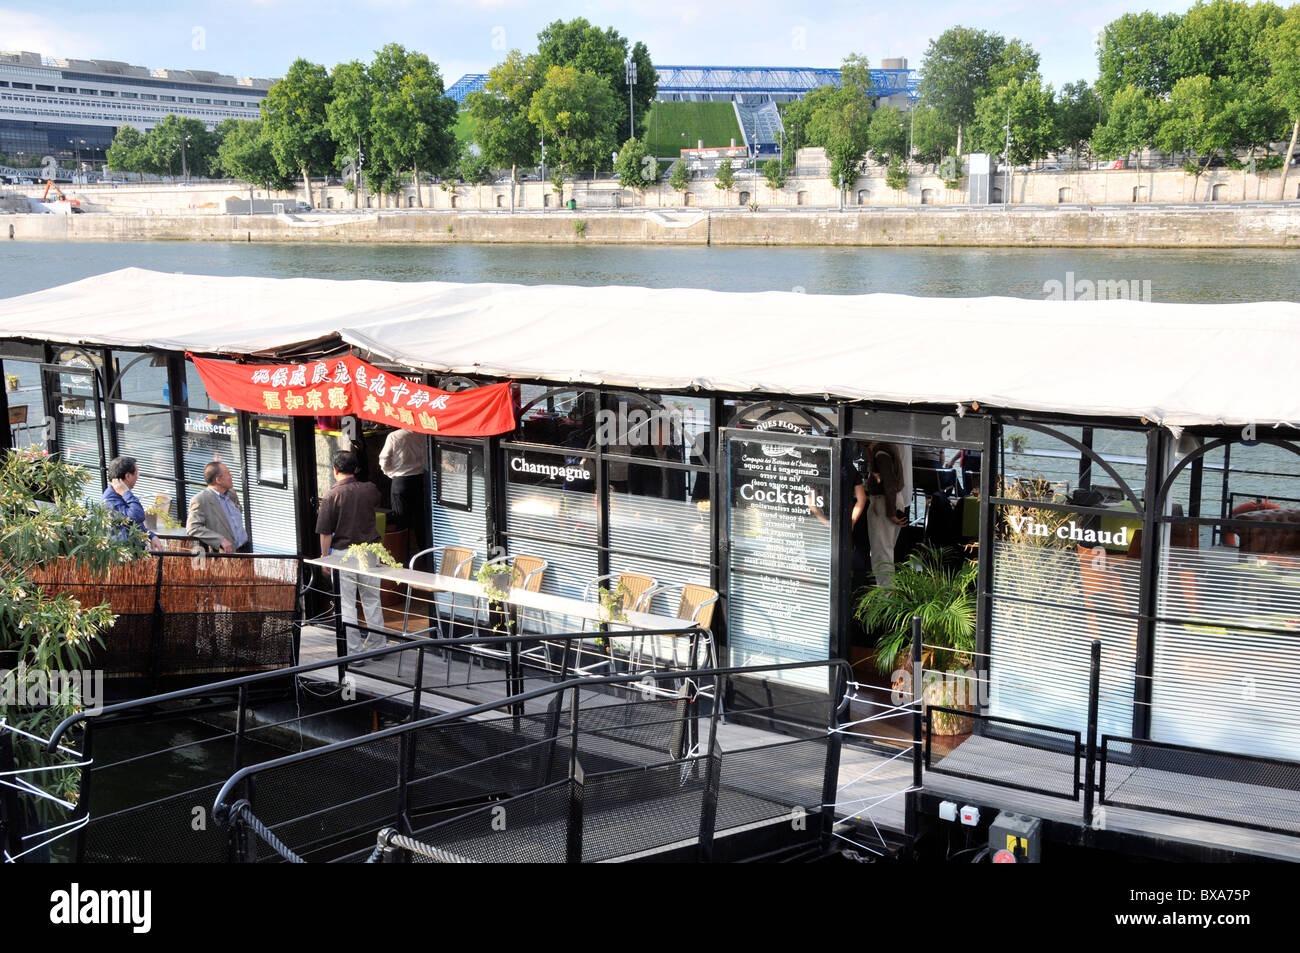 café on barge, Seine river, Paris, France Stock Photo